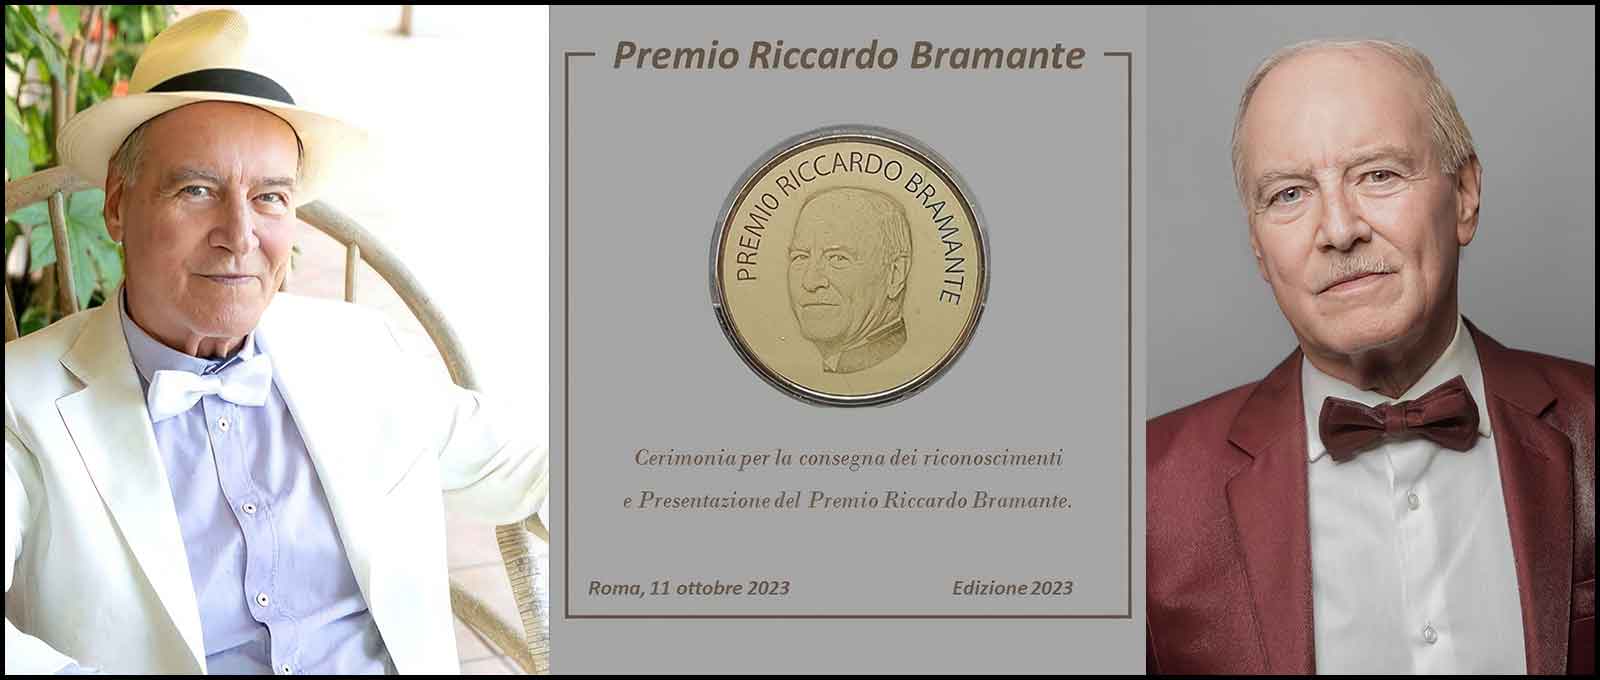 Riccardo Bramante, Premio Passione, Arte e Cultura.